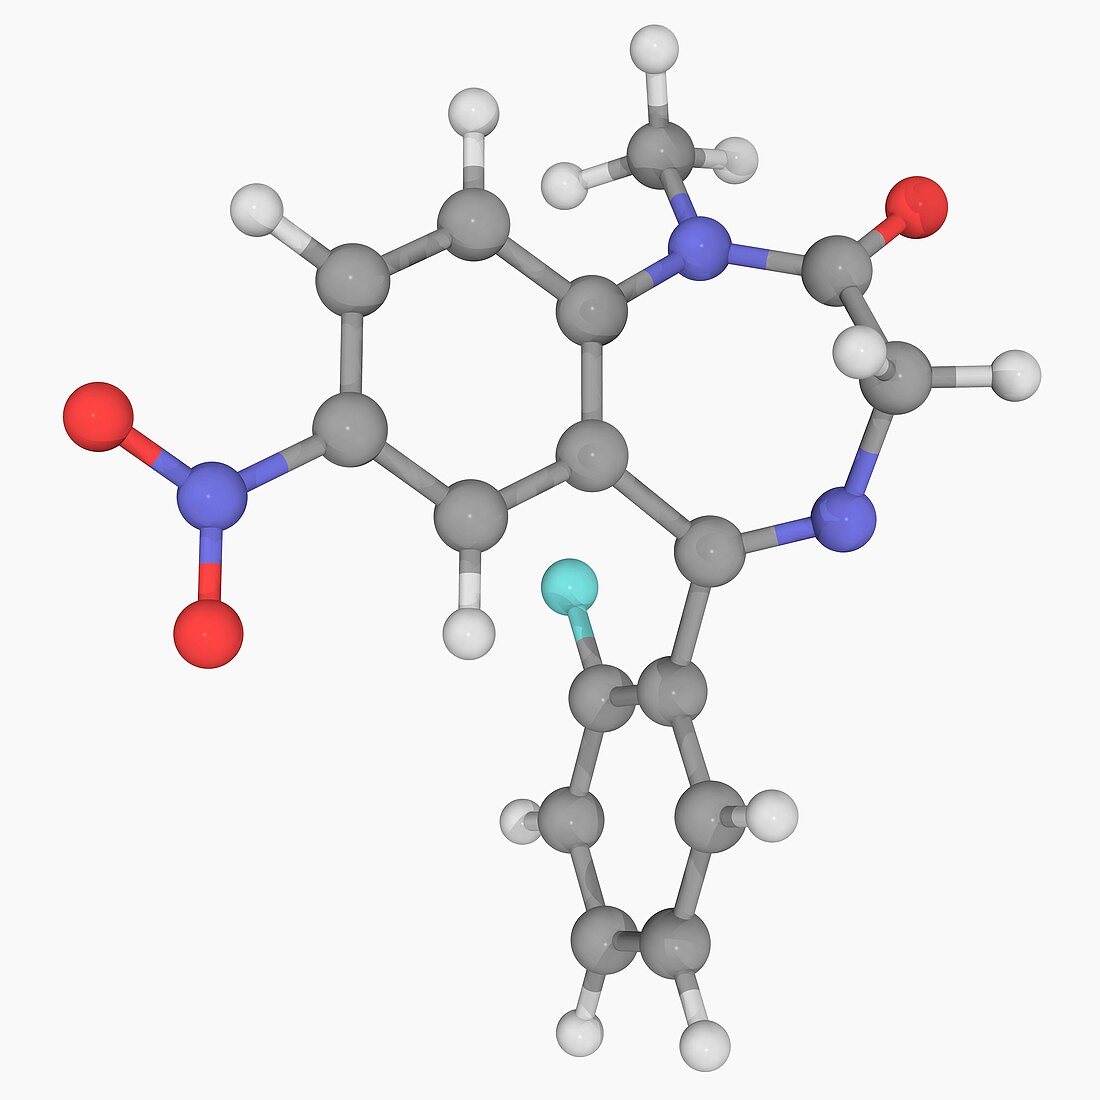 Rohypnol drug molecule